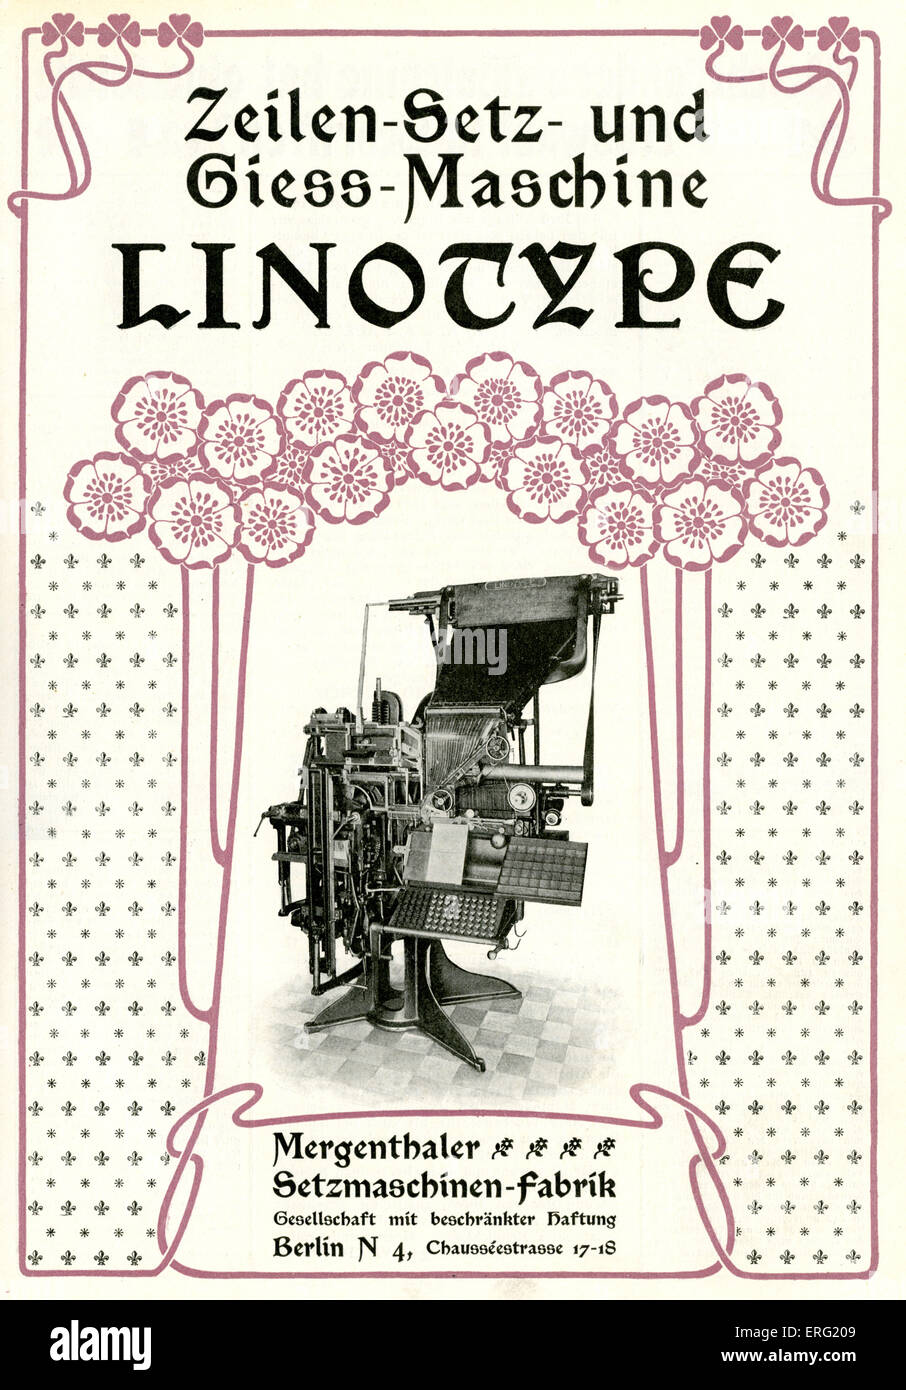 Deutsche Werbung für Linotype-Maschinen von der Mergenthaler-Einstellung Maschinenfabrik, Berlin. Aus Druckereien Katalog, 1902. Stockfoto